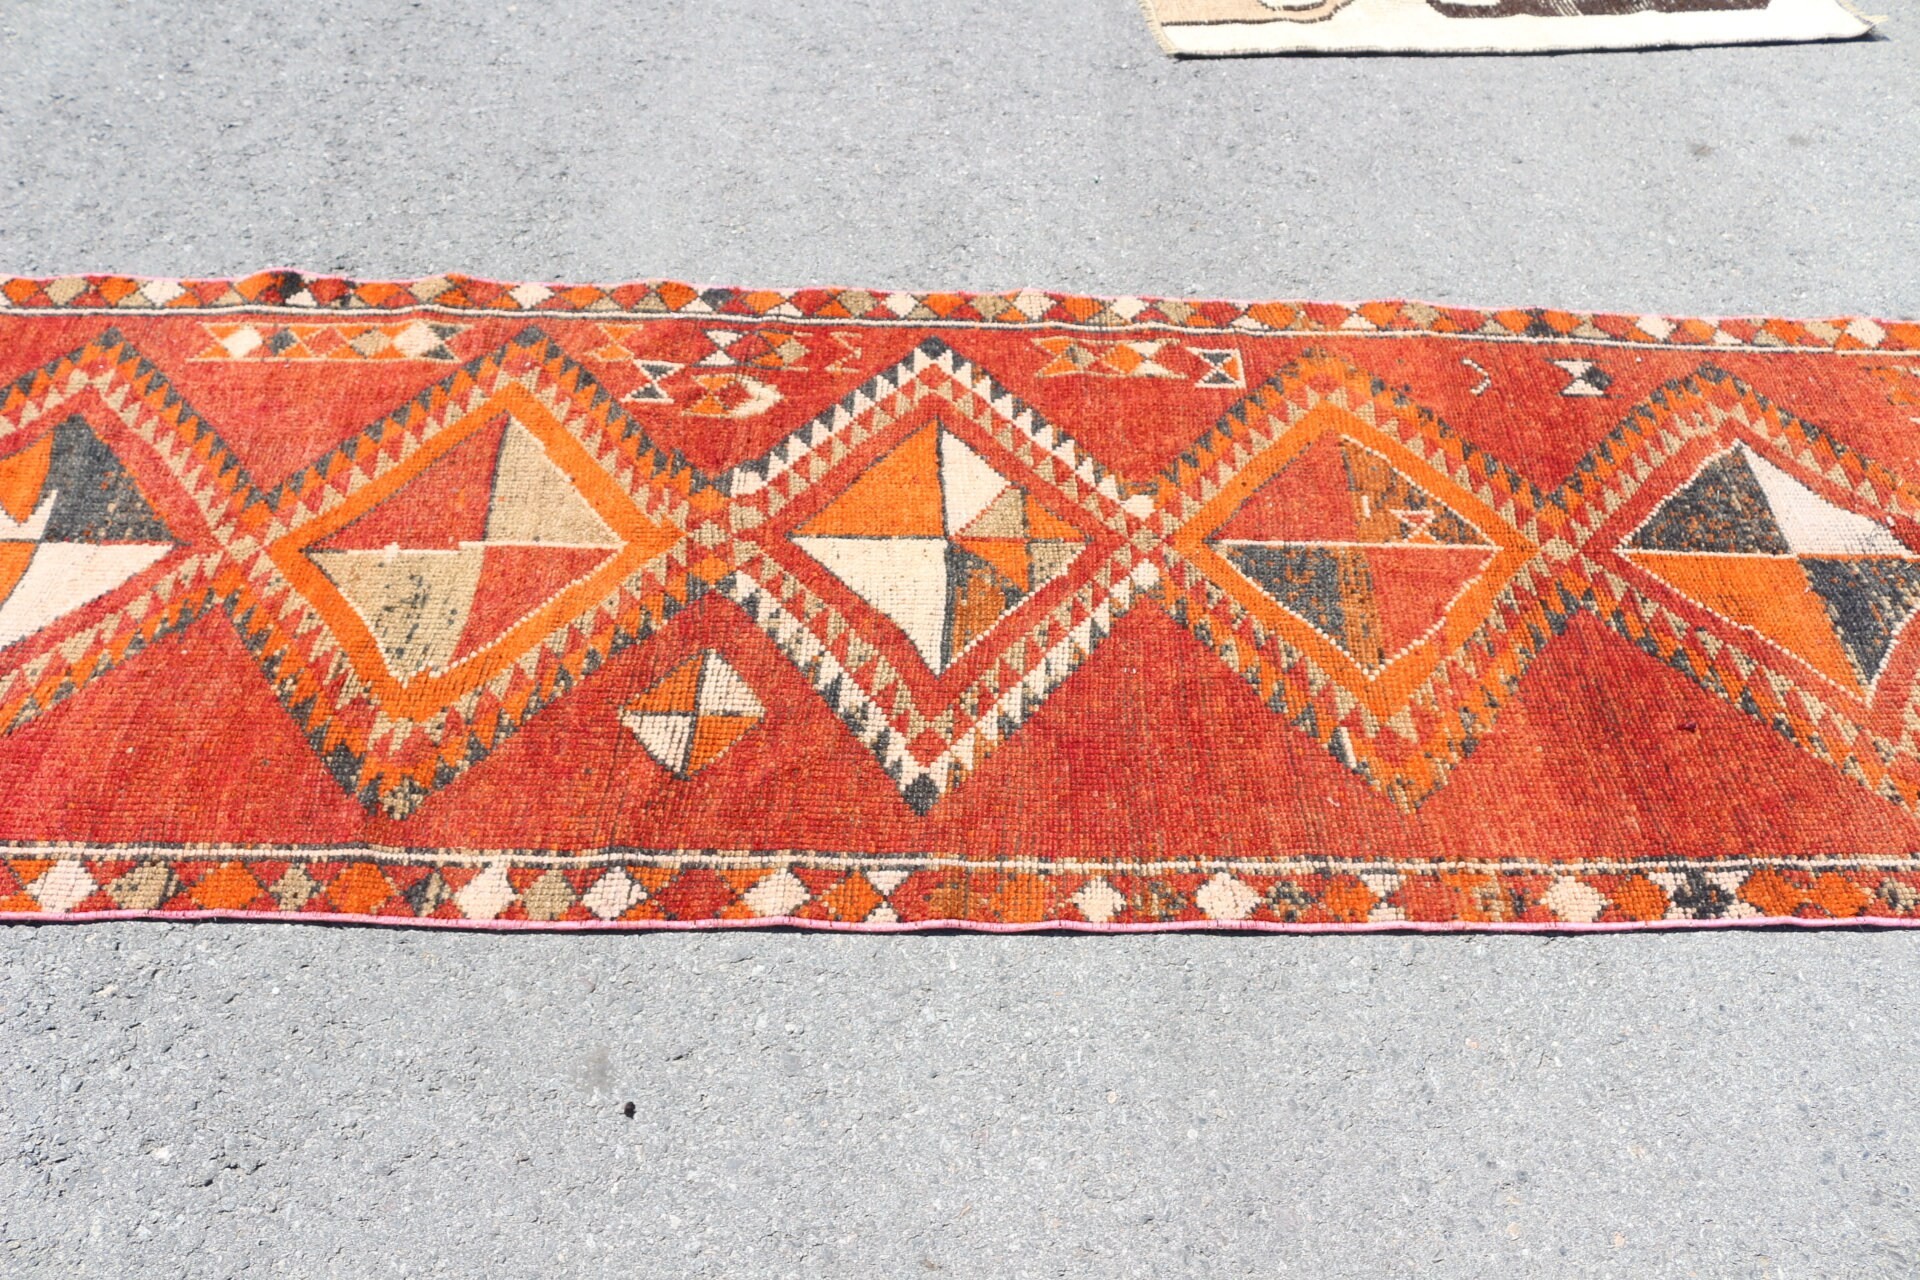 Turkish Rug, Antique Rug, Kitchen Rug, Hallway Rug, Wool Rugs, Cute Rug, Orange Home Decor Rug, Vintage Rugs, 3.1x10.5 ft Runner Rugs